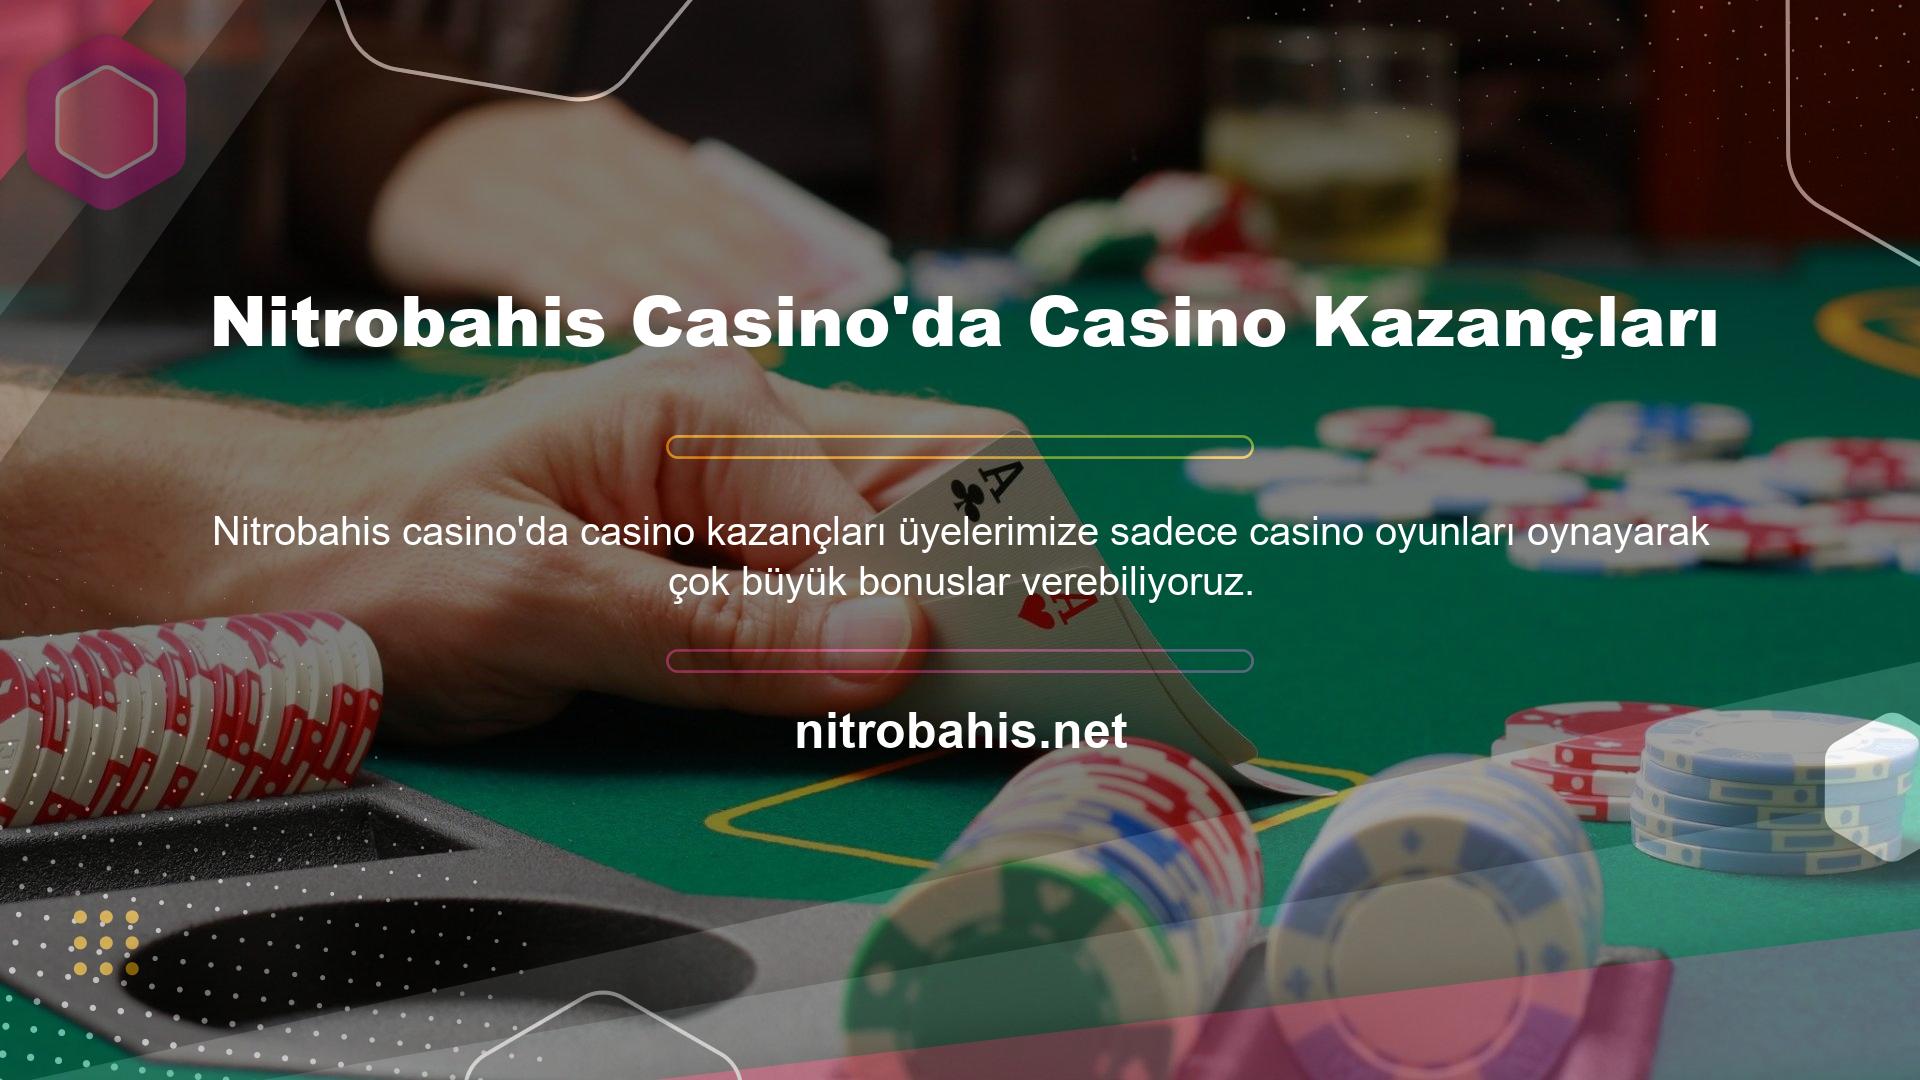 Nitrobahis Casino'nun kullanıcılarına sunduğu casino oyun hizmetleri sayesinde her gün onlarca üye, güvenliklerini arttırmak için yüksek bakiyeler biriktirmektedir